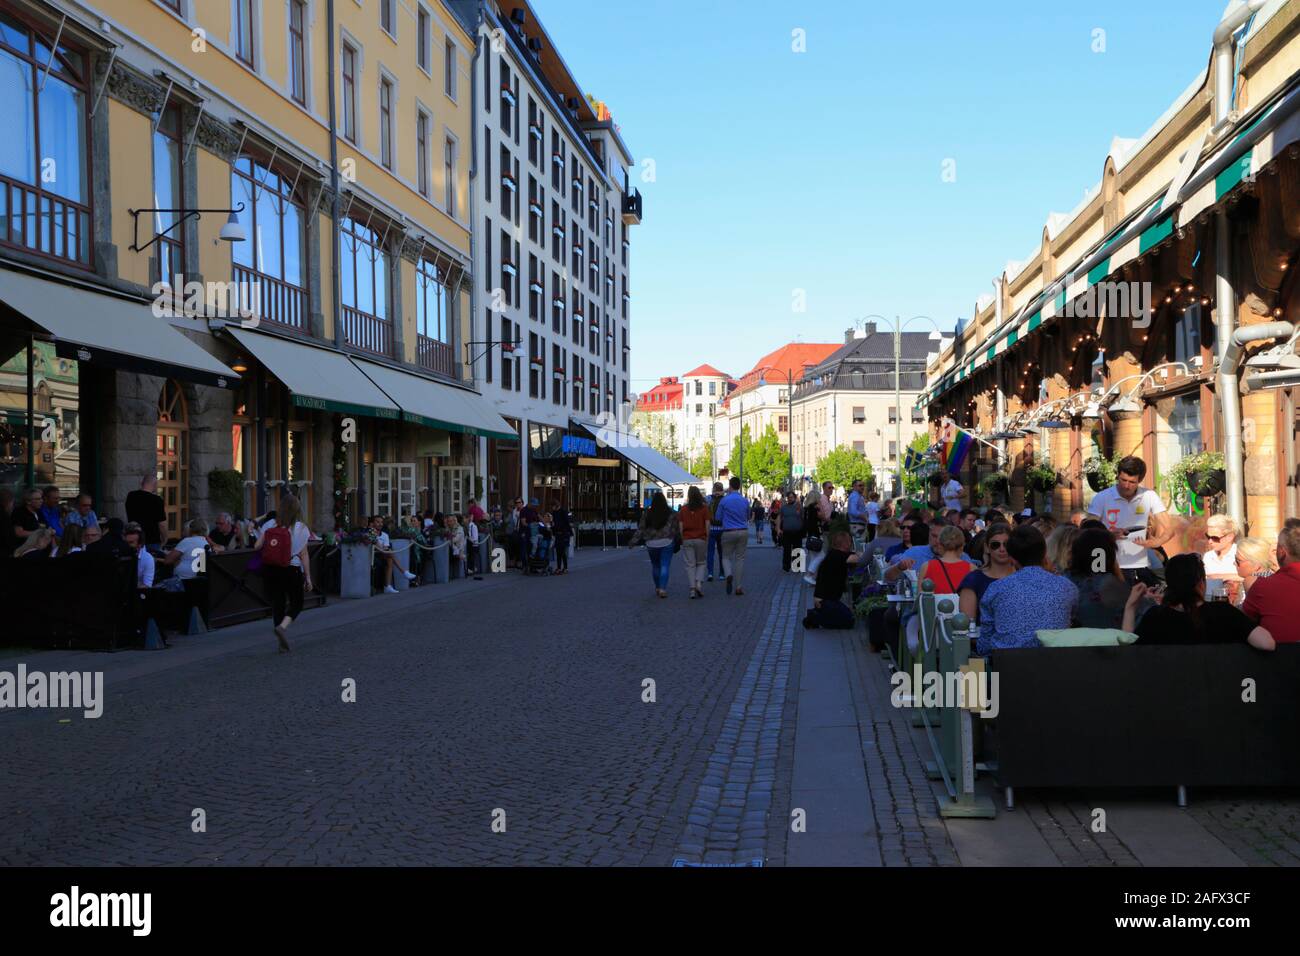 Die Leute sitzen in Cafés und Restaurants in einem ruhigen, sauberen Street im Stadtzentrum von Göteborg, Schweden, im Sommer. Stockfoto